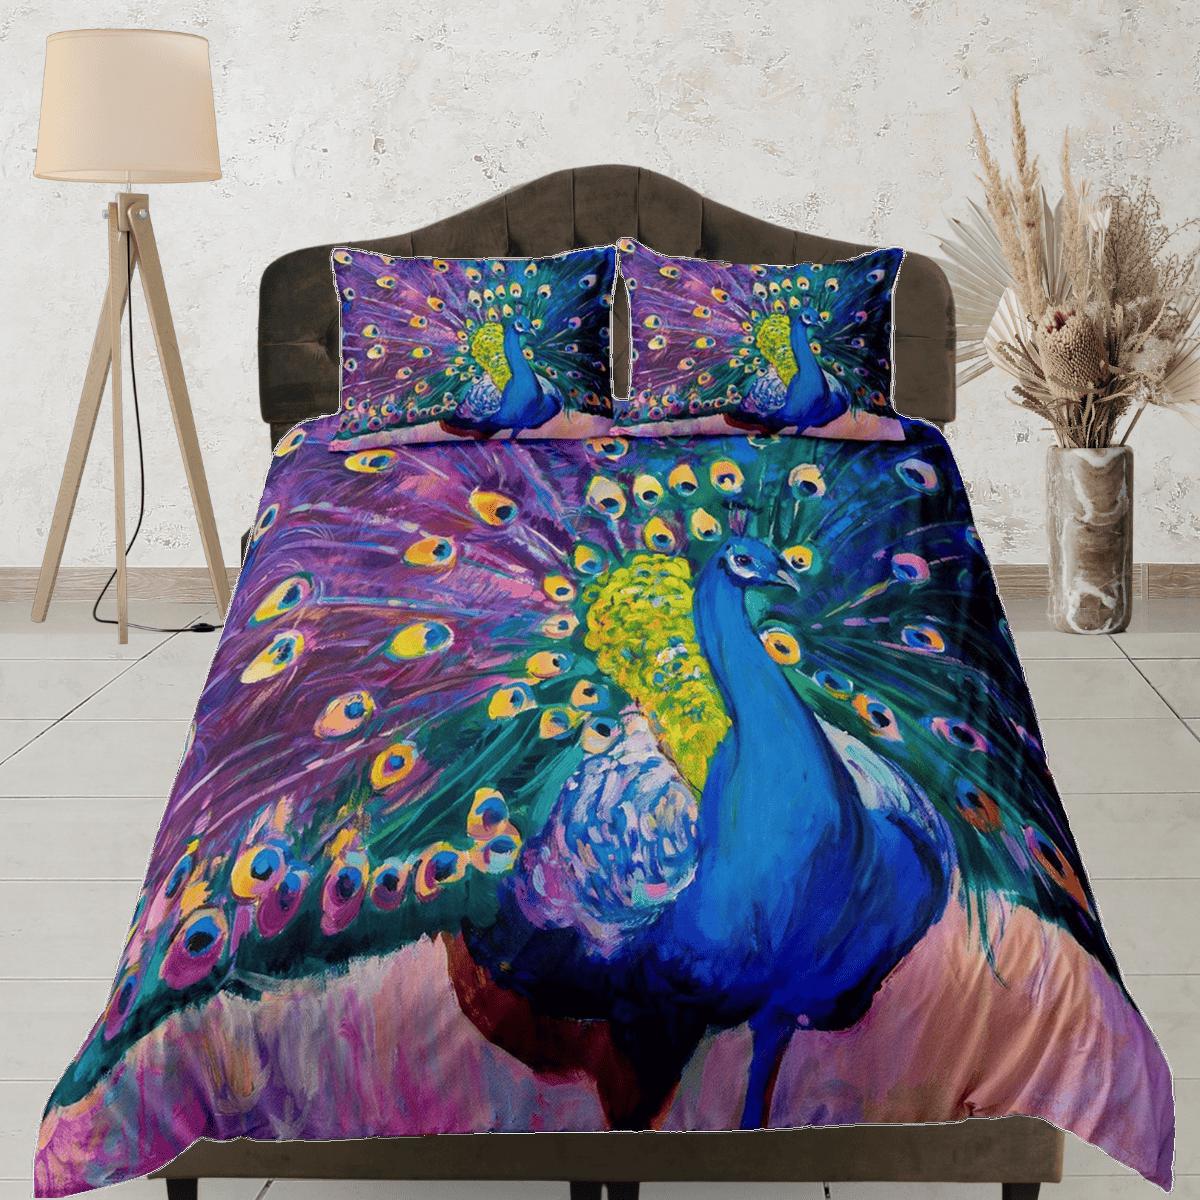 daintyduvet Colorful peacock decor aesthetic bedding set full, luxury duvet cover queen, king, boho duvet, designer bedding, maximalist purple bedspread